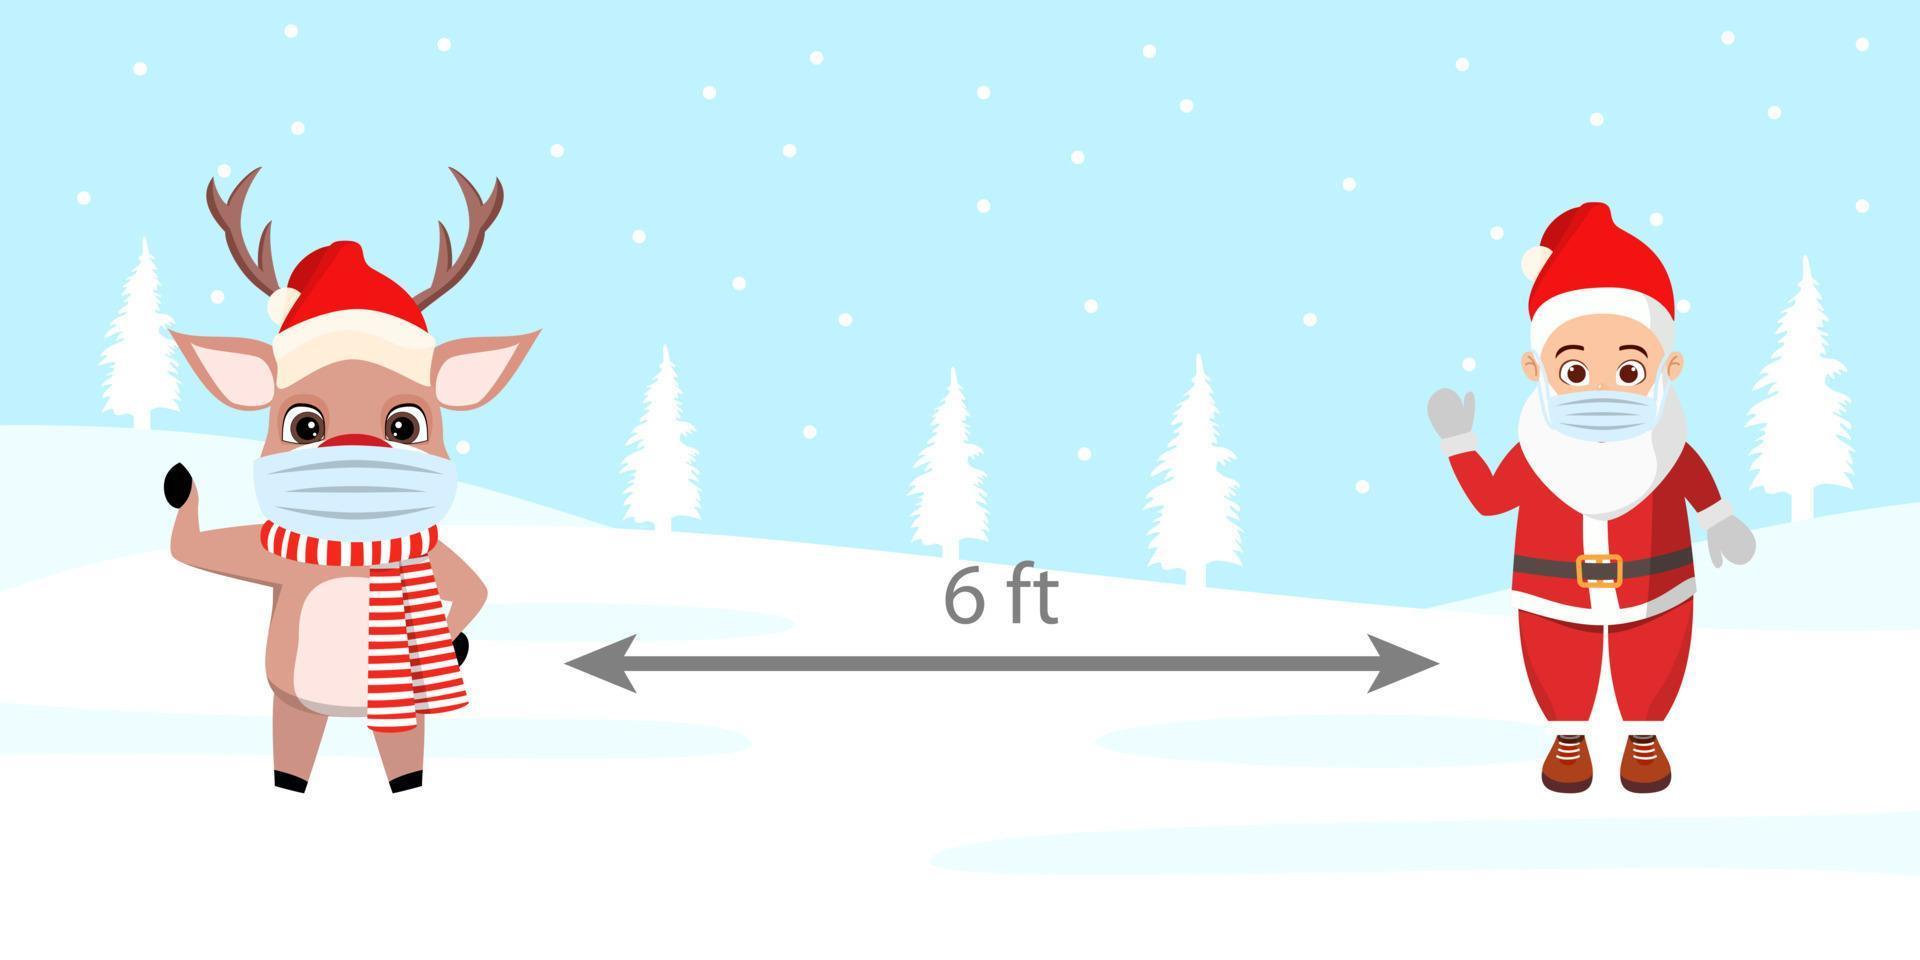 carino bellissimo personaggio di babbo natale personaggio di renna in piedi sul campo di neve neve che cade indossando abiti natalizi e maschera facciale mantenendo una distanza sociale di 6 piedi vettore